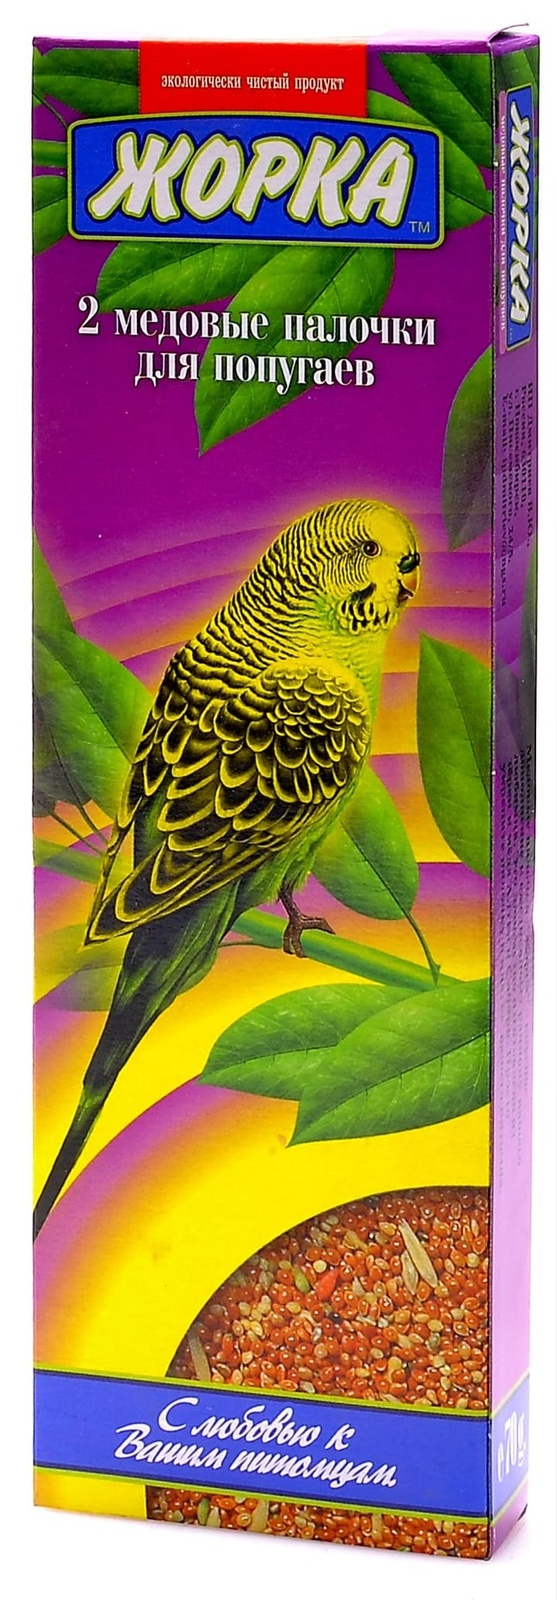 жорка lux для волнистых попугаев с минералами пакет 450 г Жорка Жорка 2шт. Палочки для волнистых попугаев (70 г)